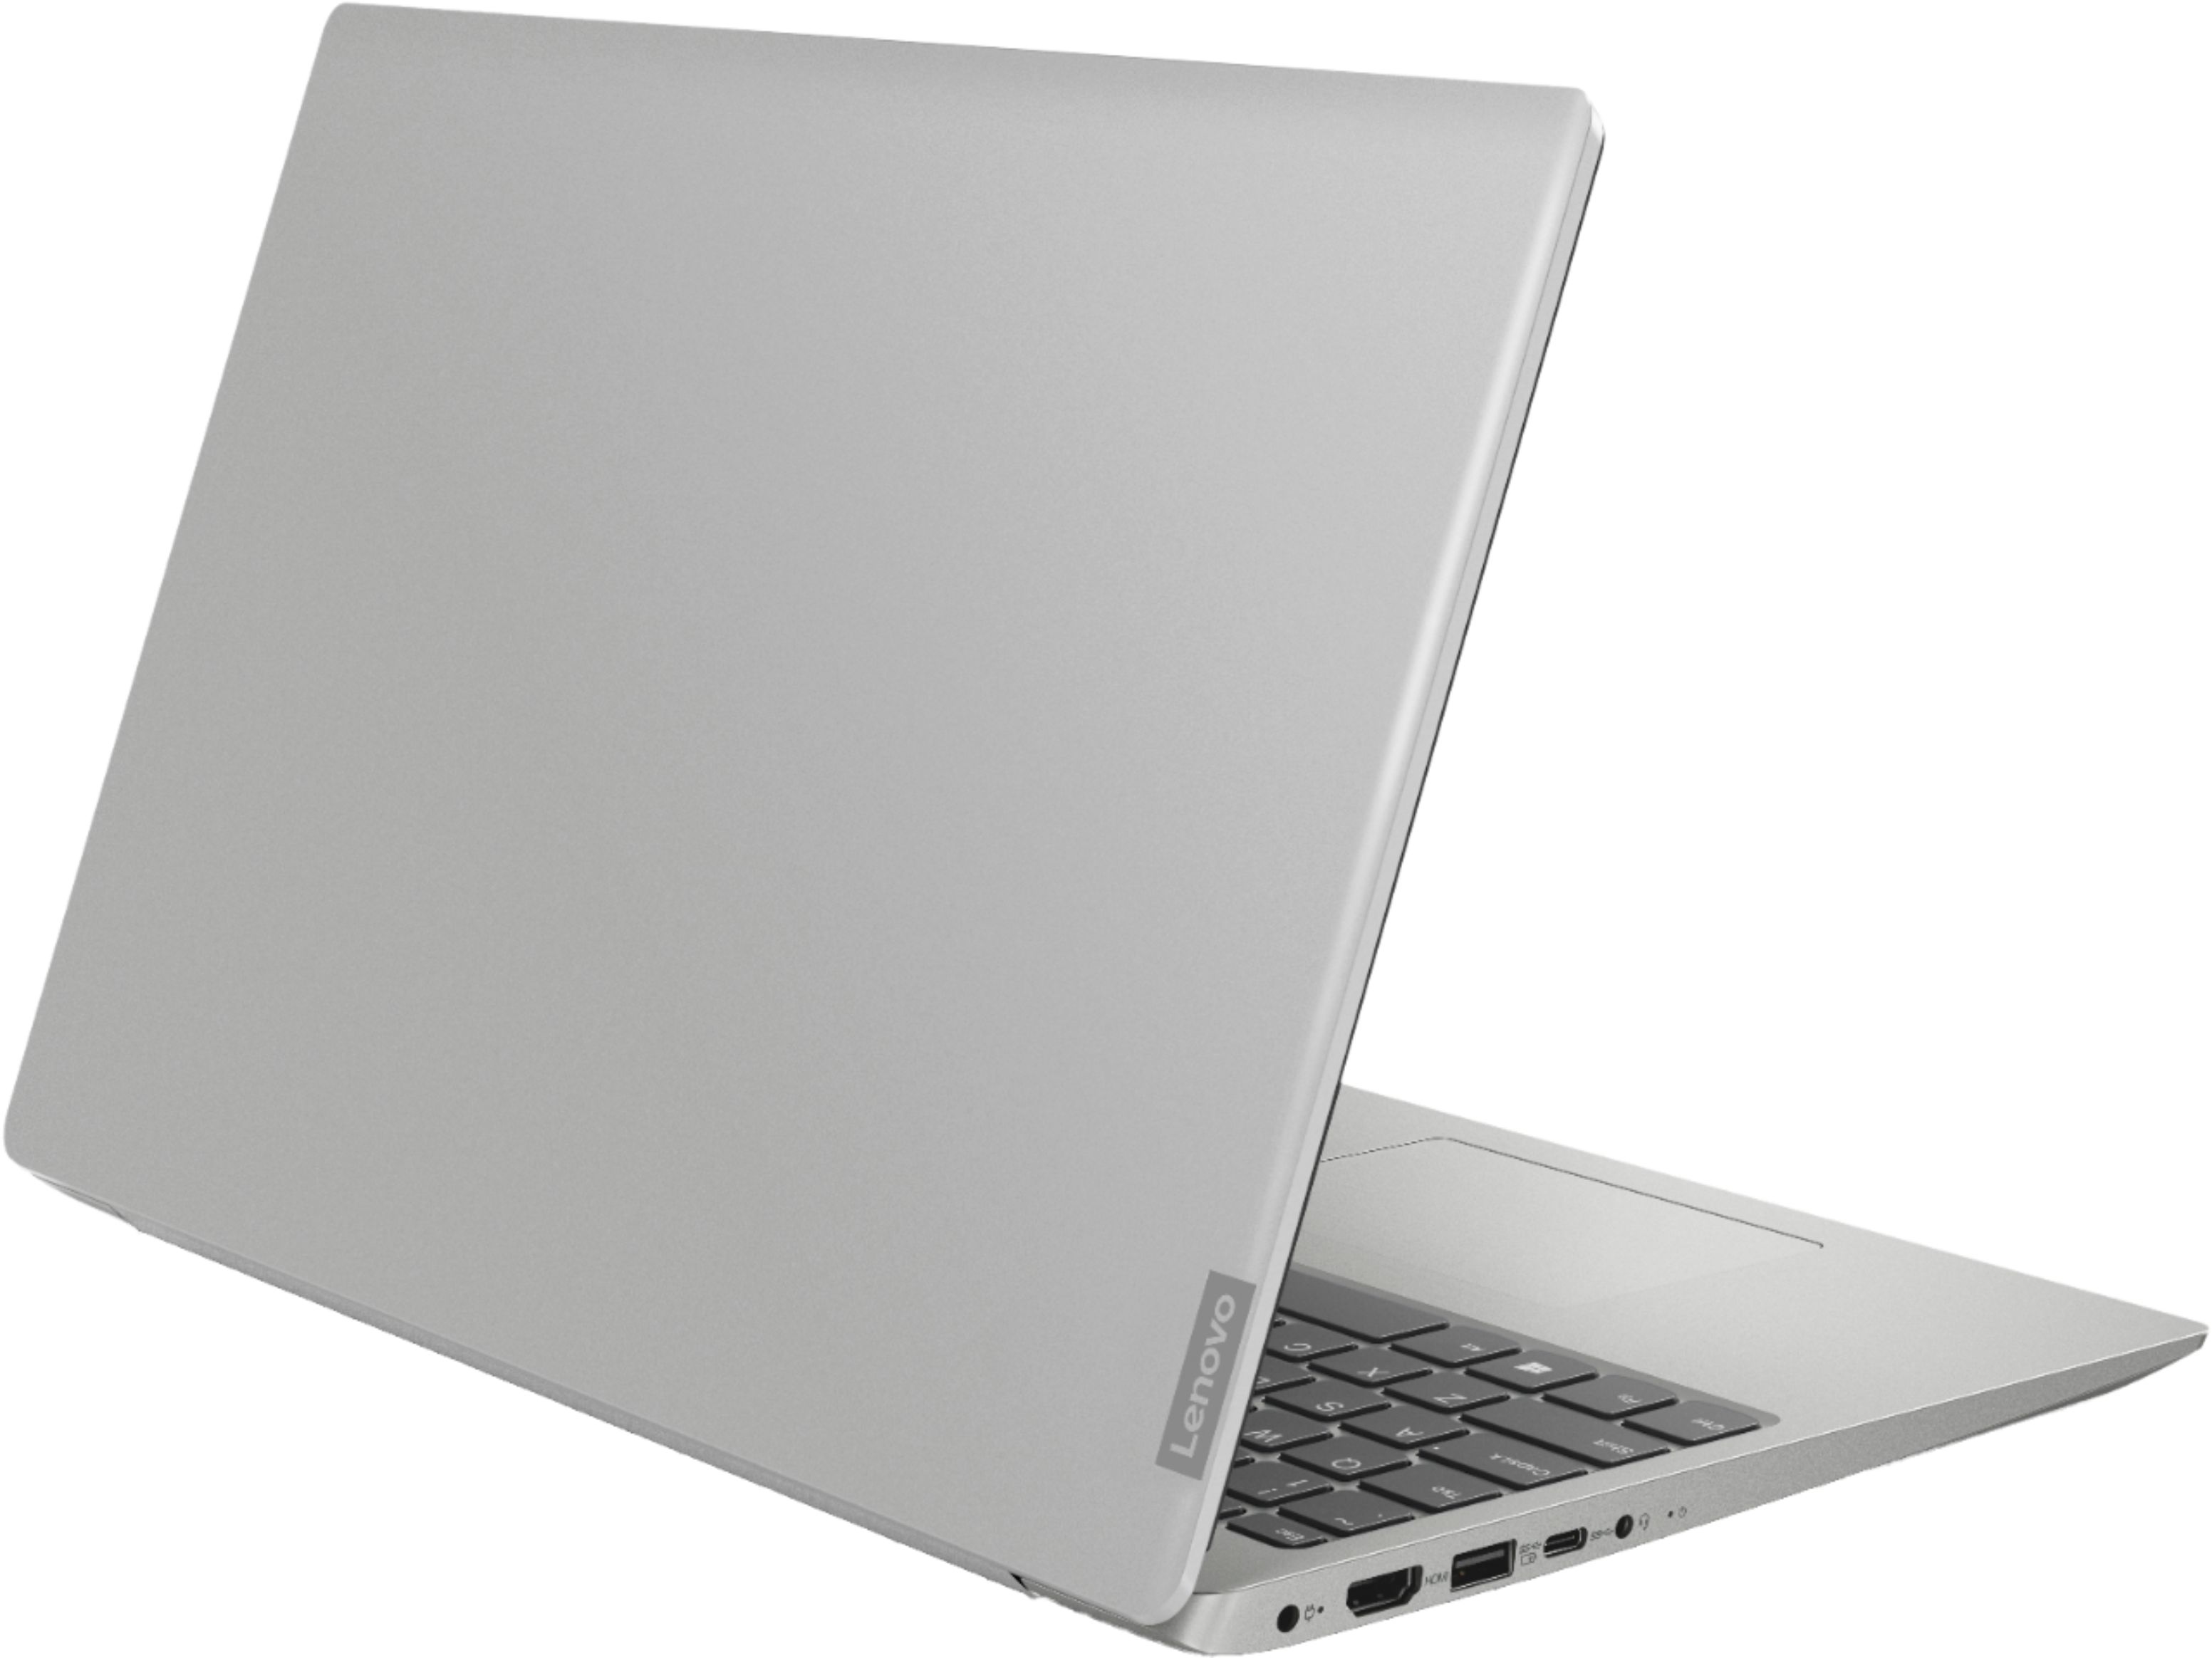 PC/タブレット ノートPC Best Buy: Lenovo IdeaPad 330S 15.6